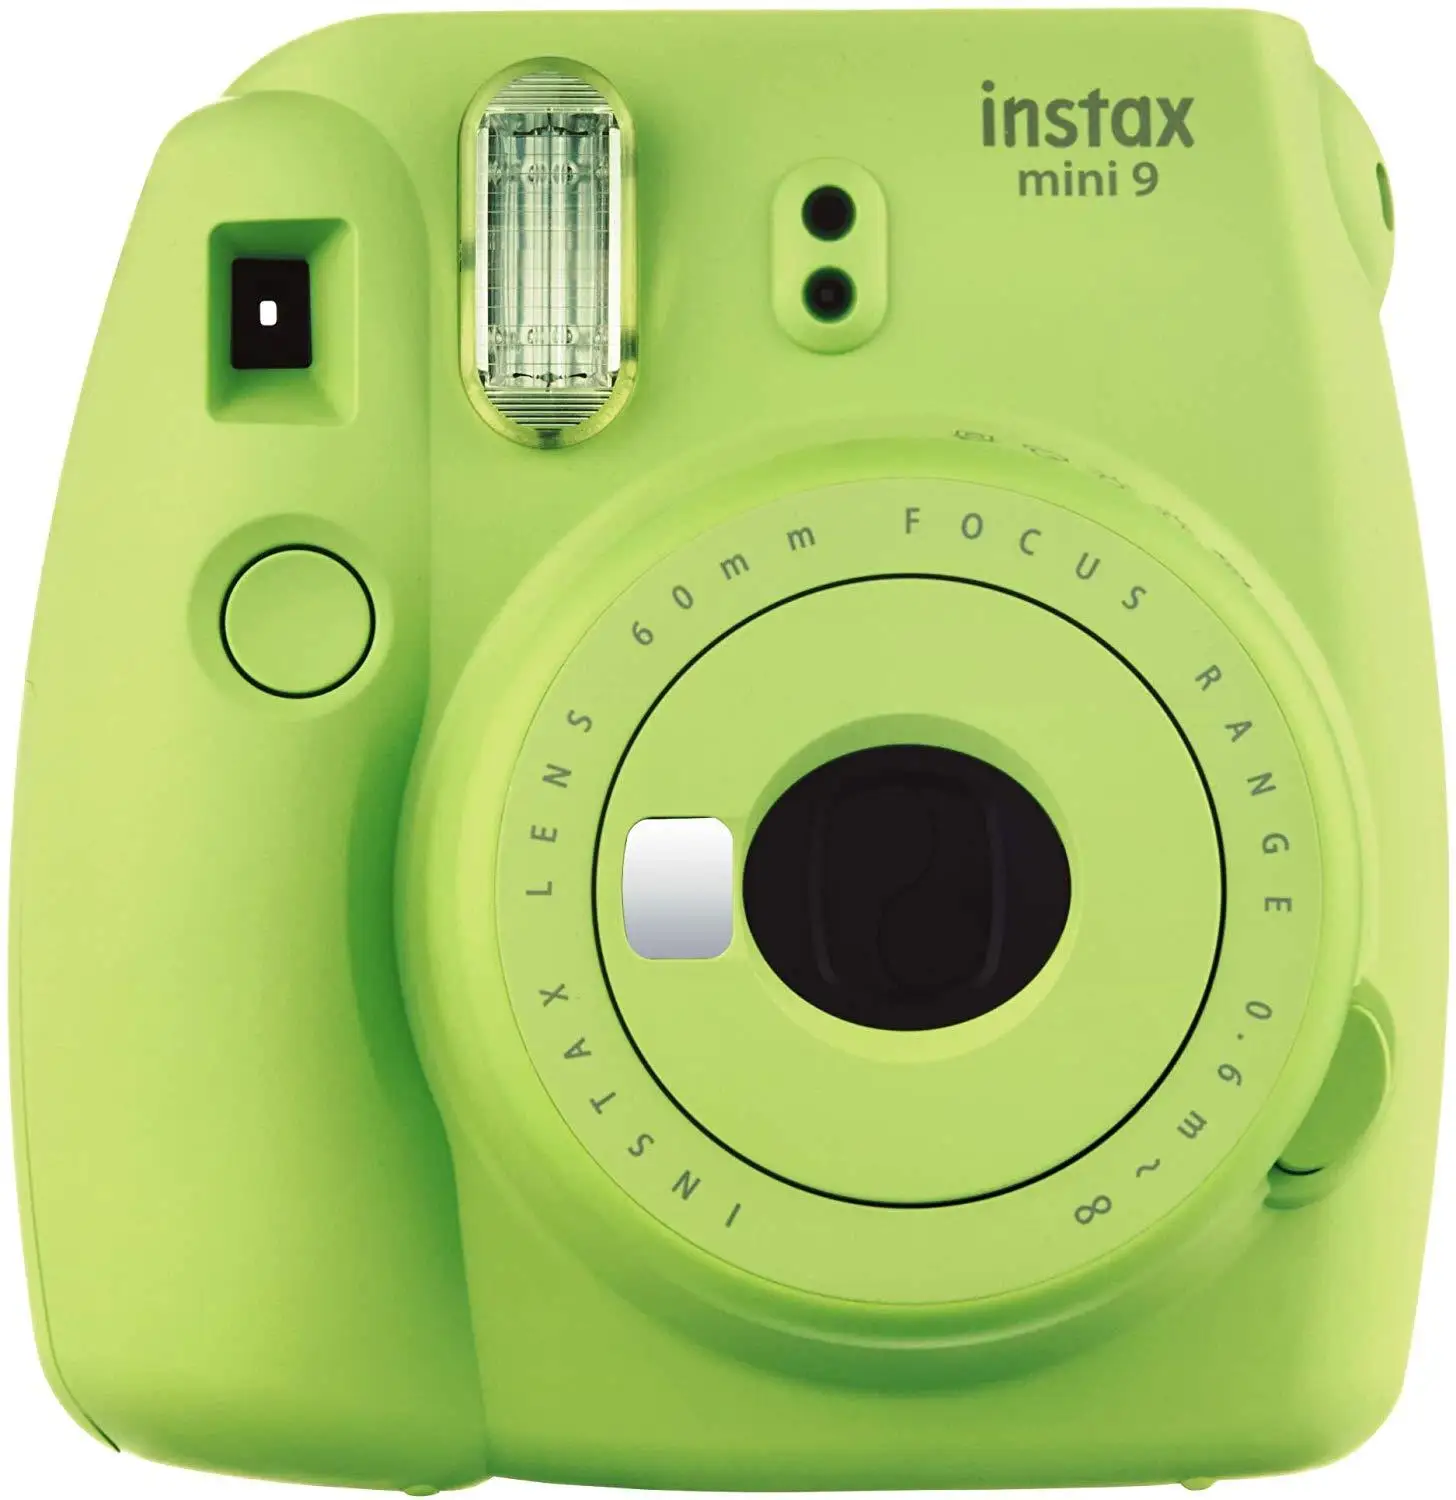 Фотокамера Instax Mini 9 цифровая детская видеокамера с фотобумагой моментальной печати 20-100 листов Fujifilm Instax photo Kameras